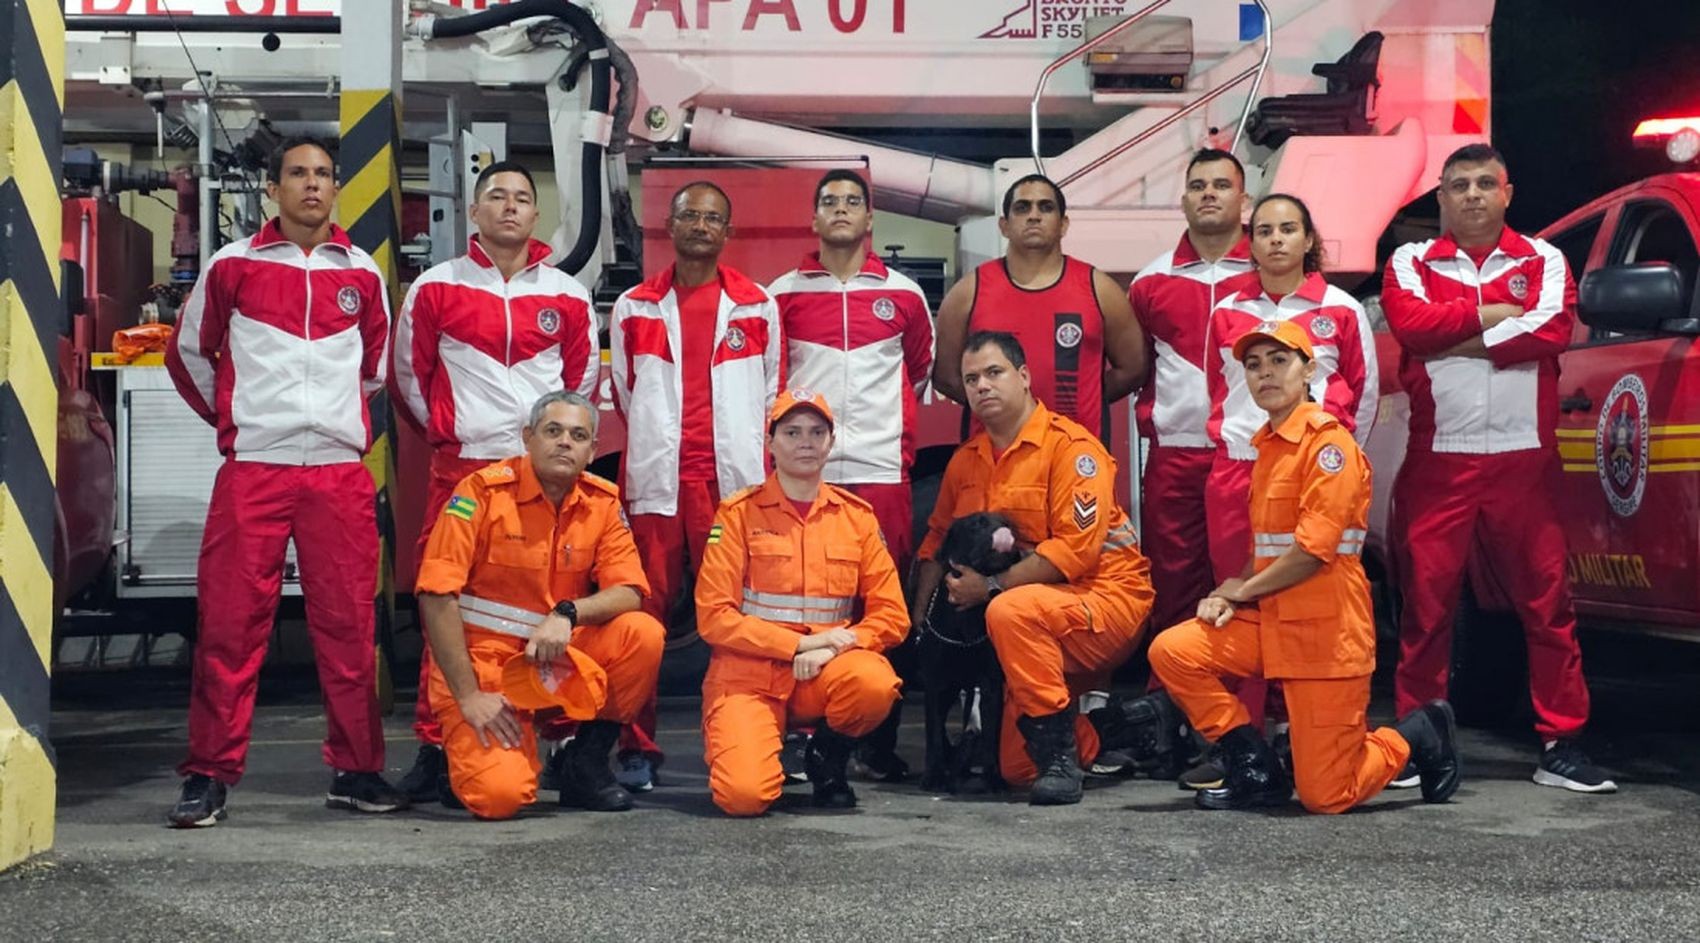 Nove bombeiros militares de SE especialistas em catástrofes irão ajudar nos trabalhos de resgate no Rio Grande do Sul